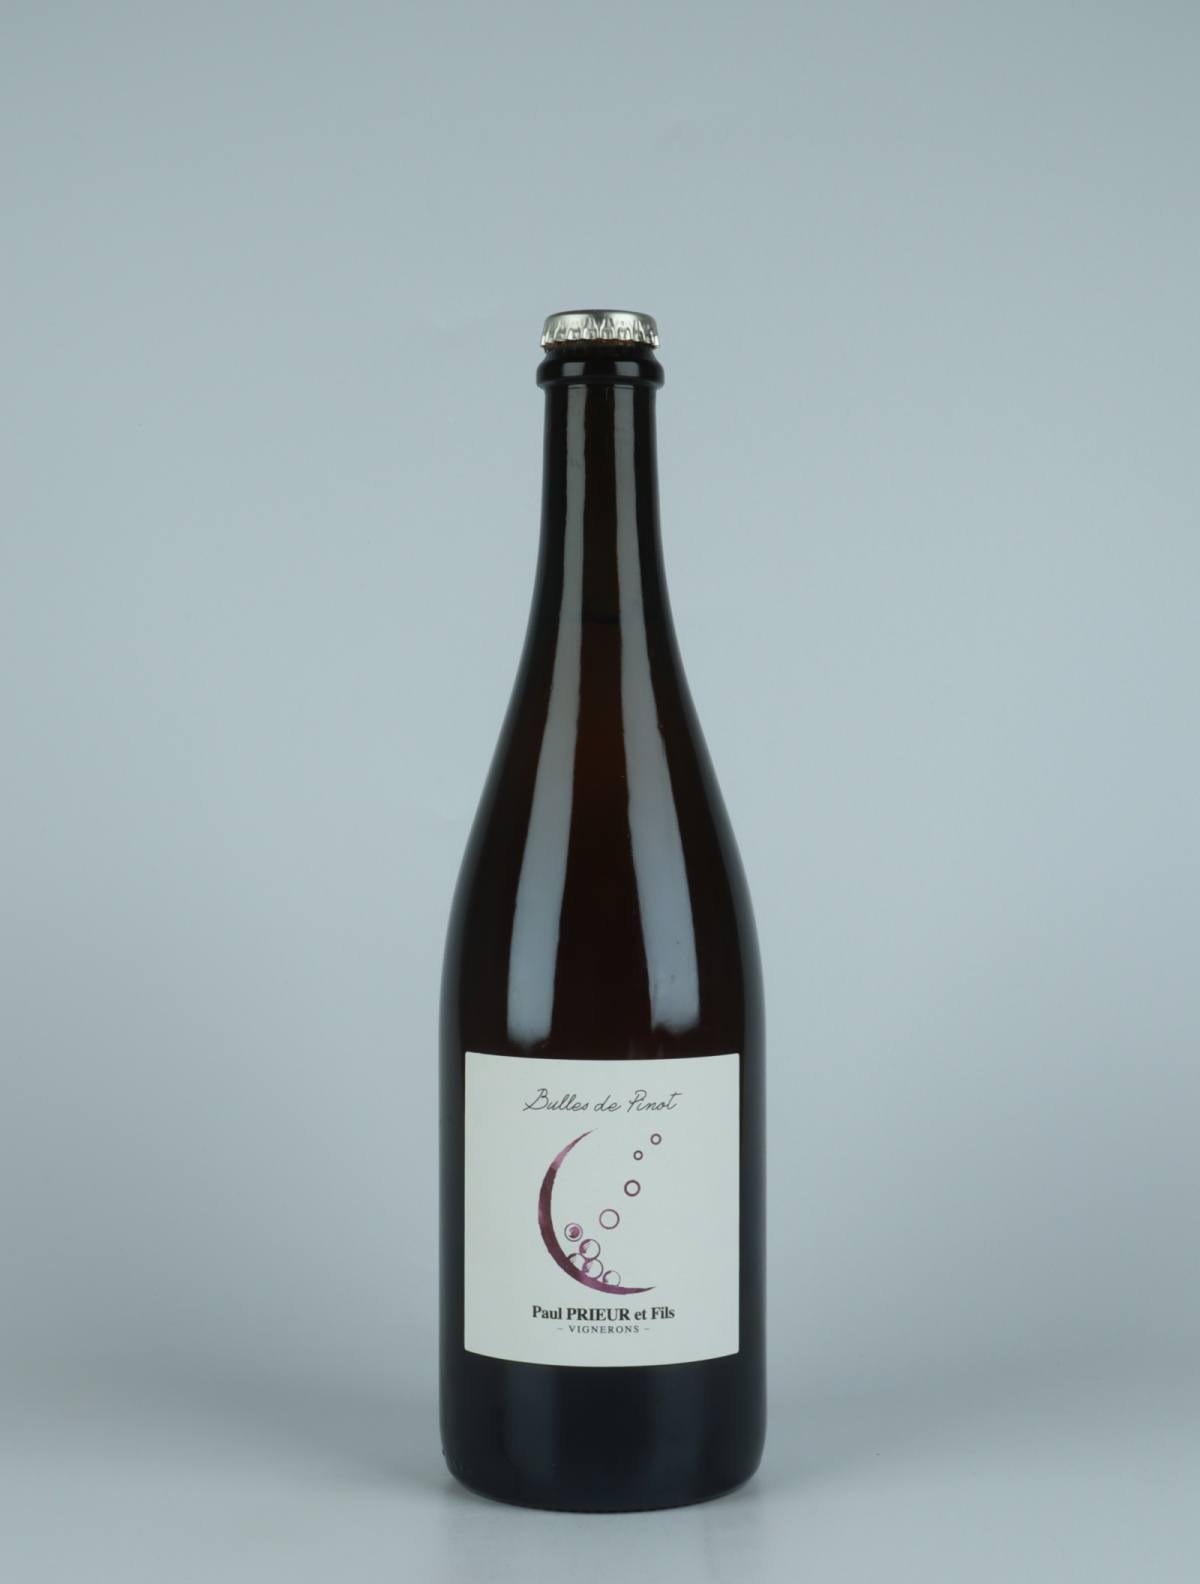 A bottle 2021 Bulles de Pinot Sparkling from Paul Prieur et Fils, Loire in France